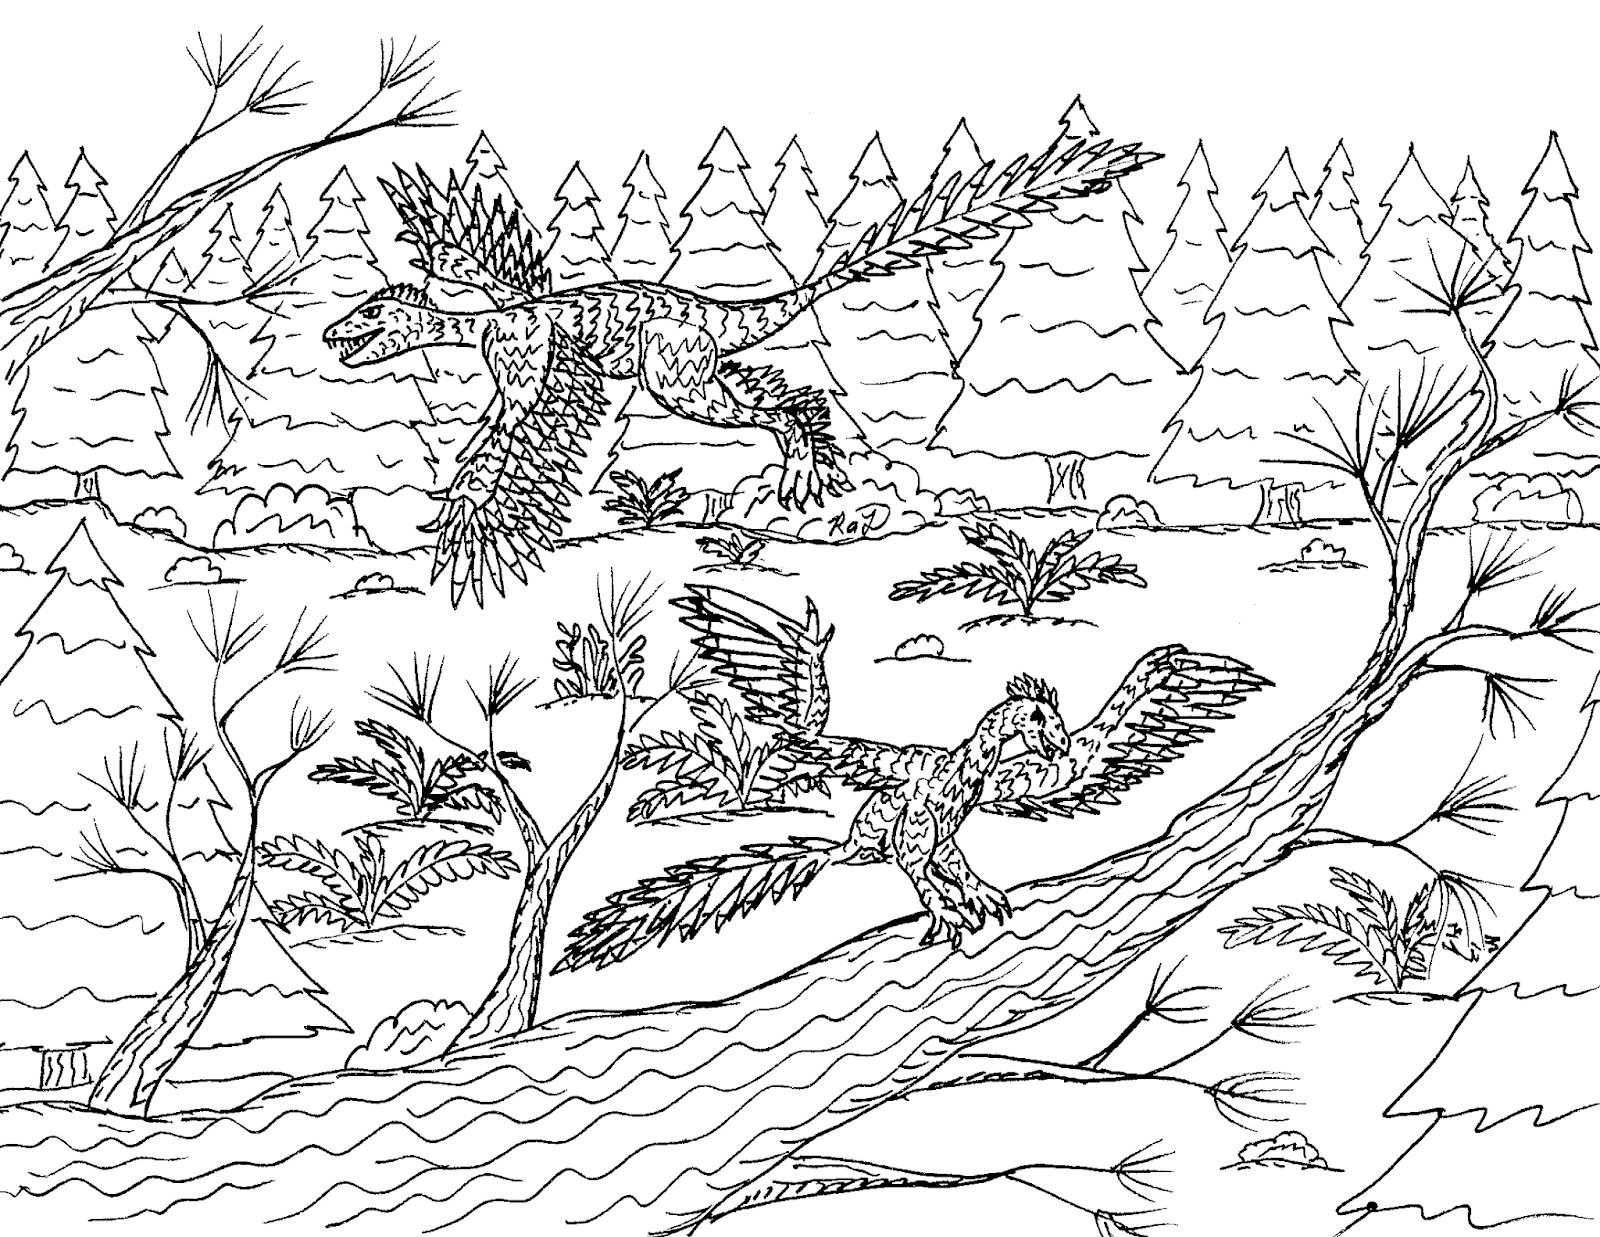 Coppia di Archaeopteryx nella foresta da Archaeopteryx